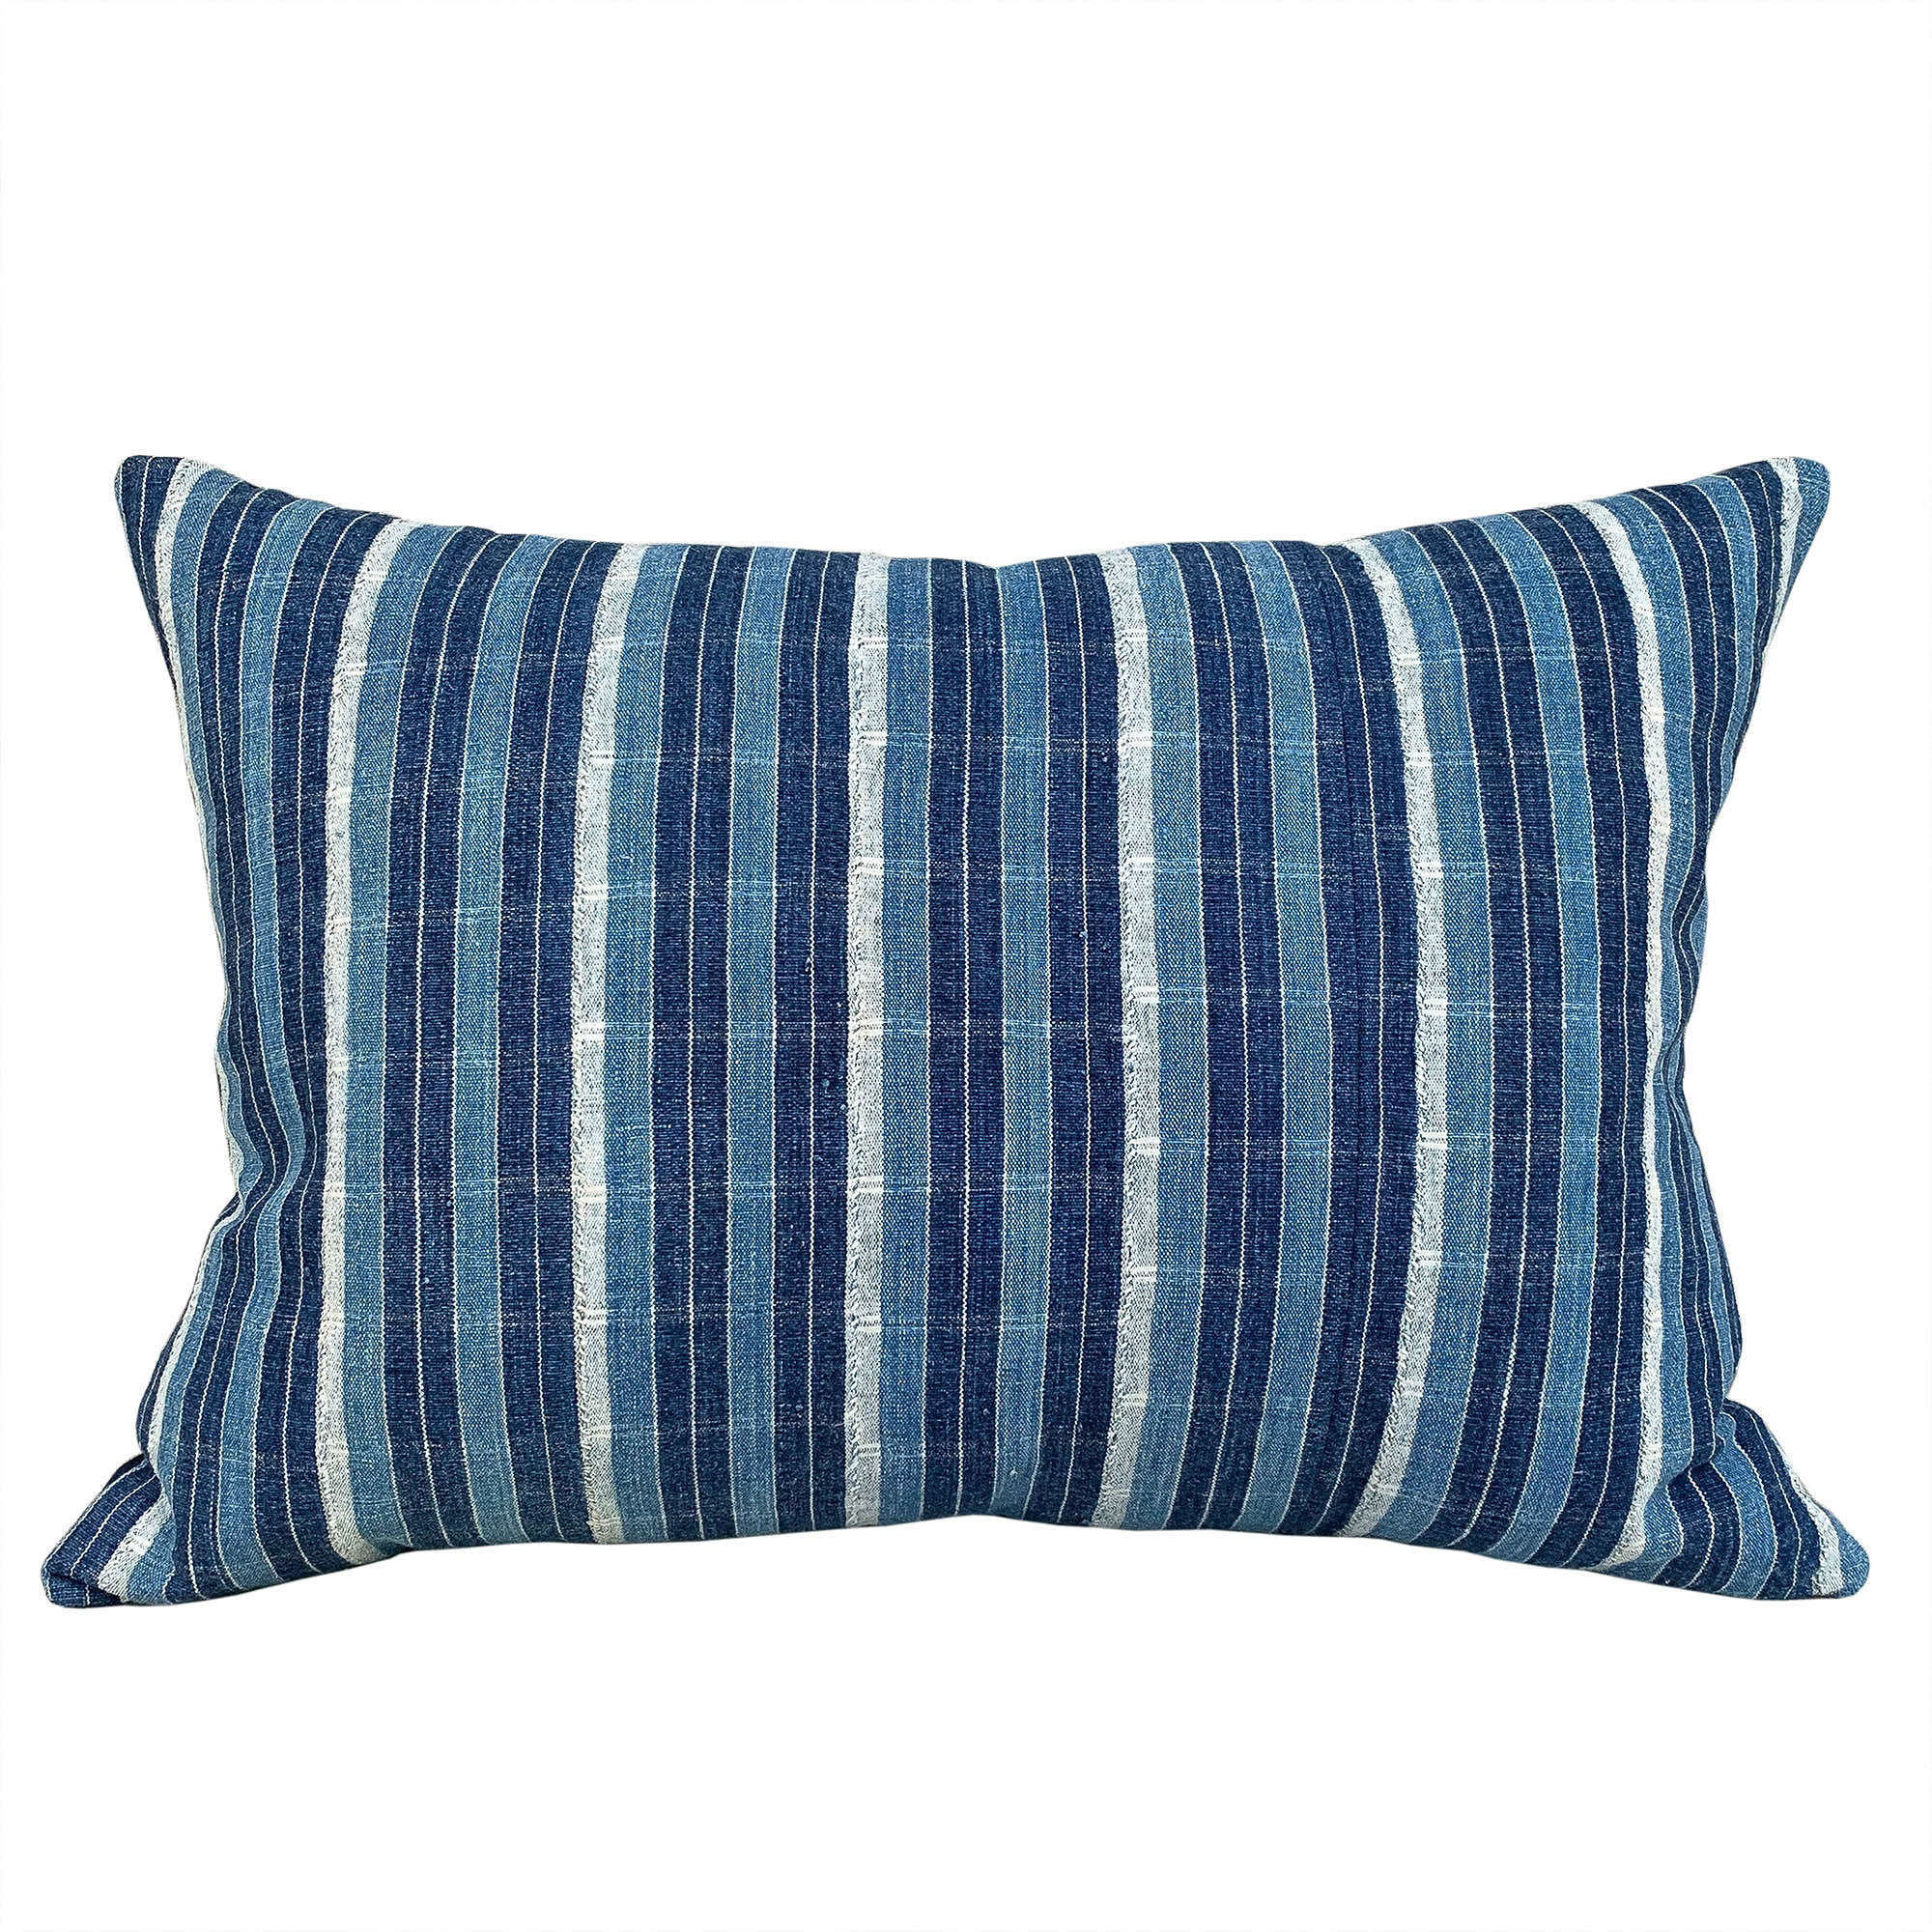 Ivory Coast indigo striped cushion